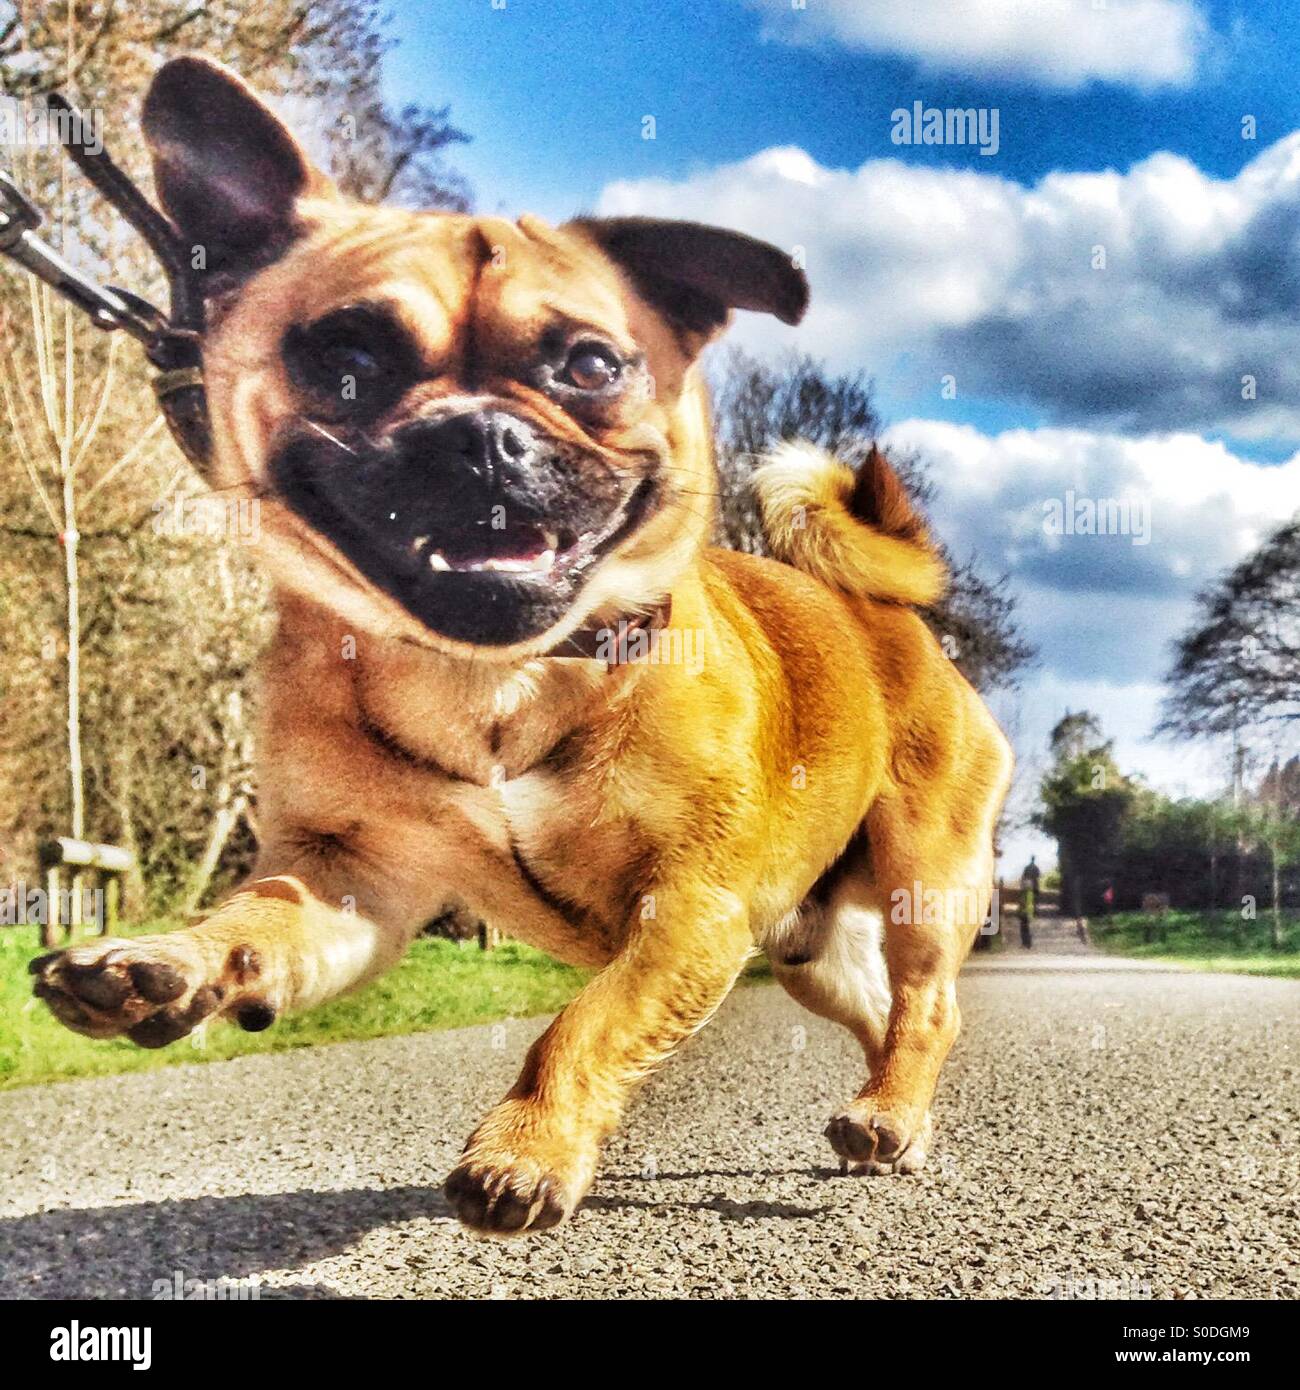 Jug pup smiling at camera Stock Photo